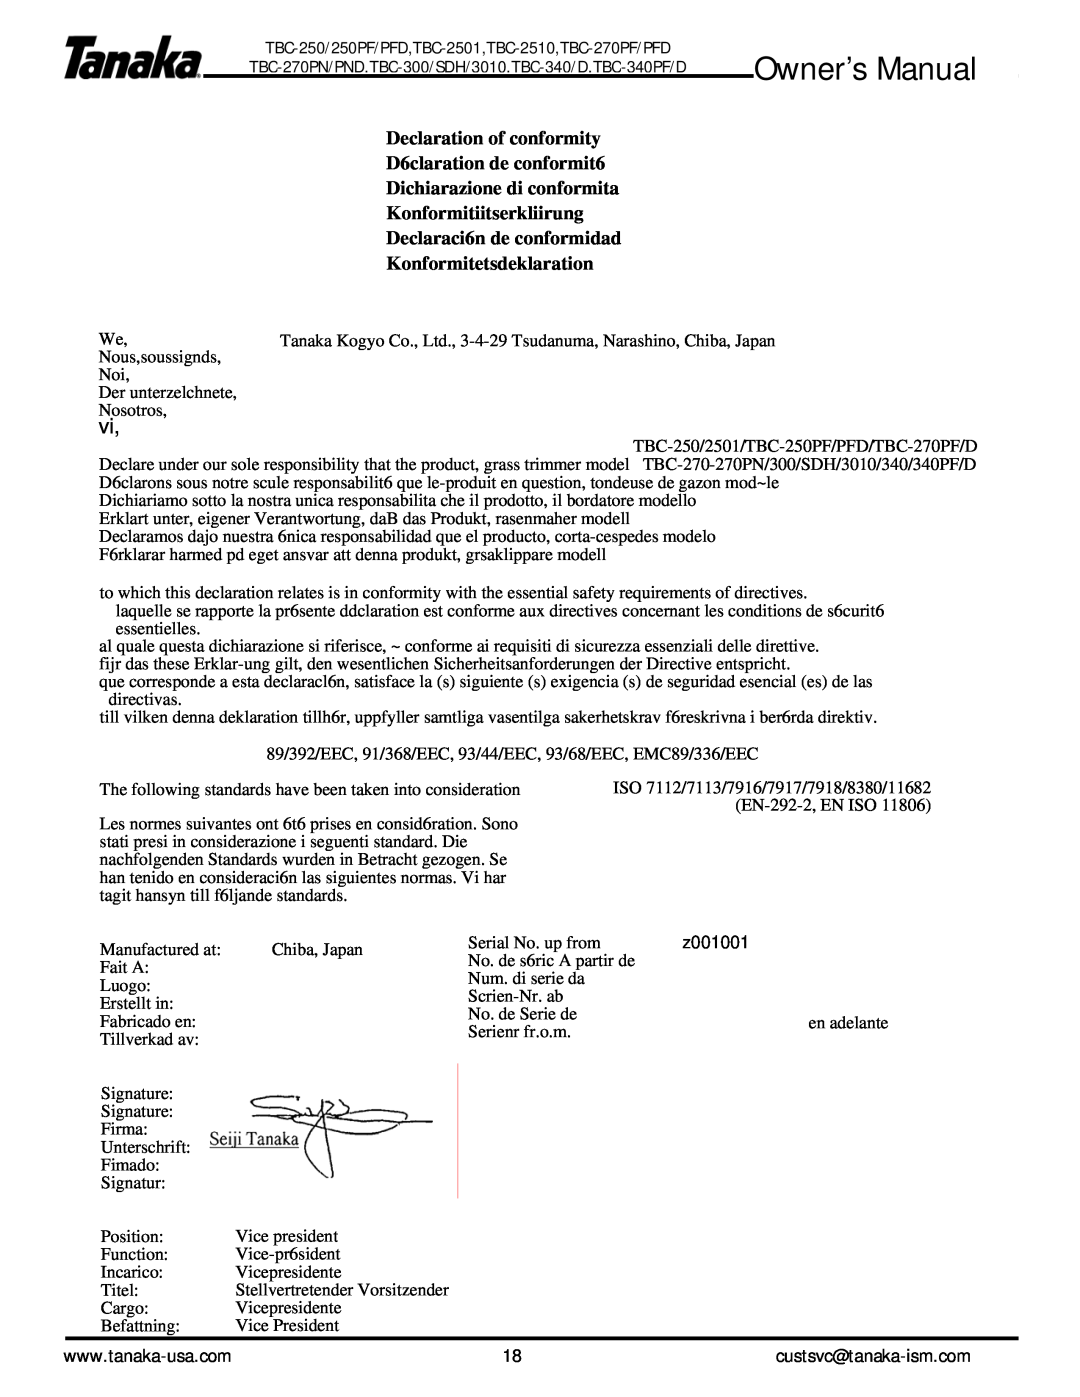 Tanaka TBC-2510 Declaration of conformity D6claration de conformit6, Dichiarazione di conformita Konformitiitserkliirung 